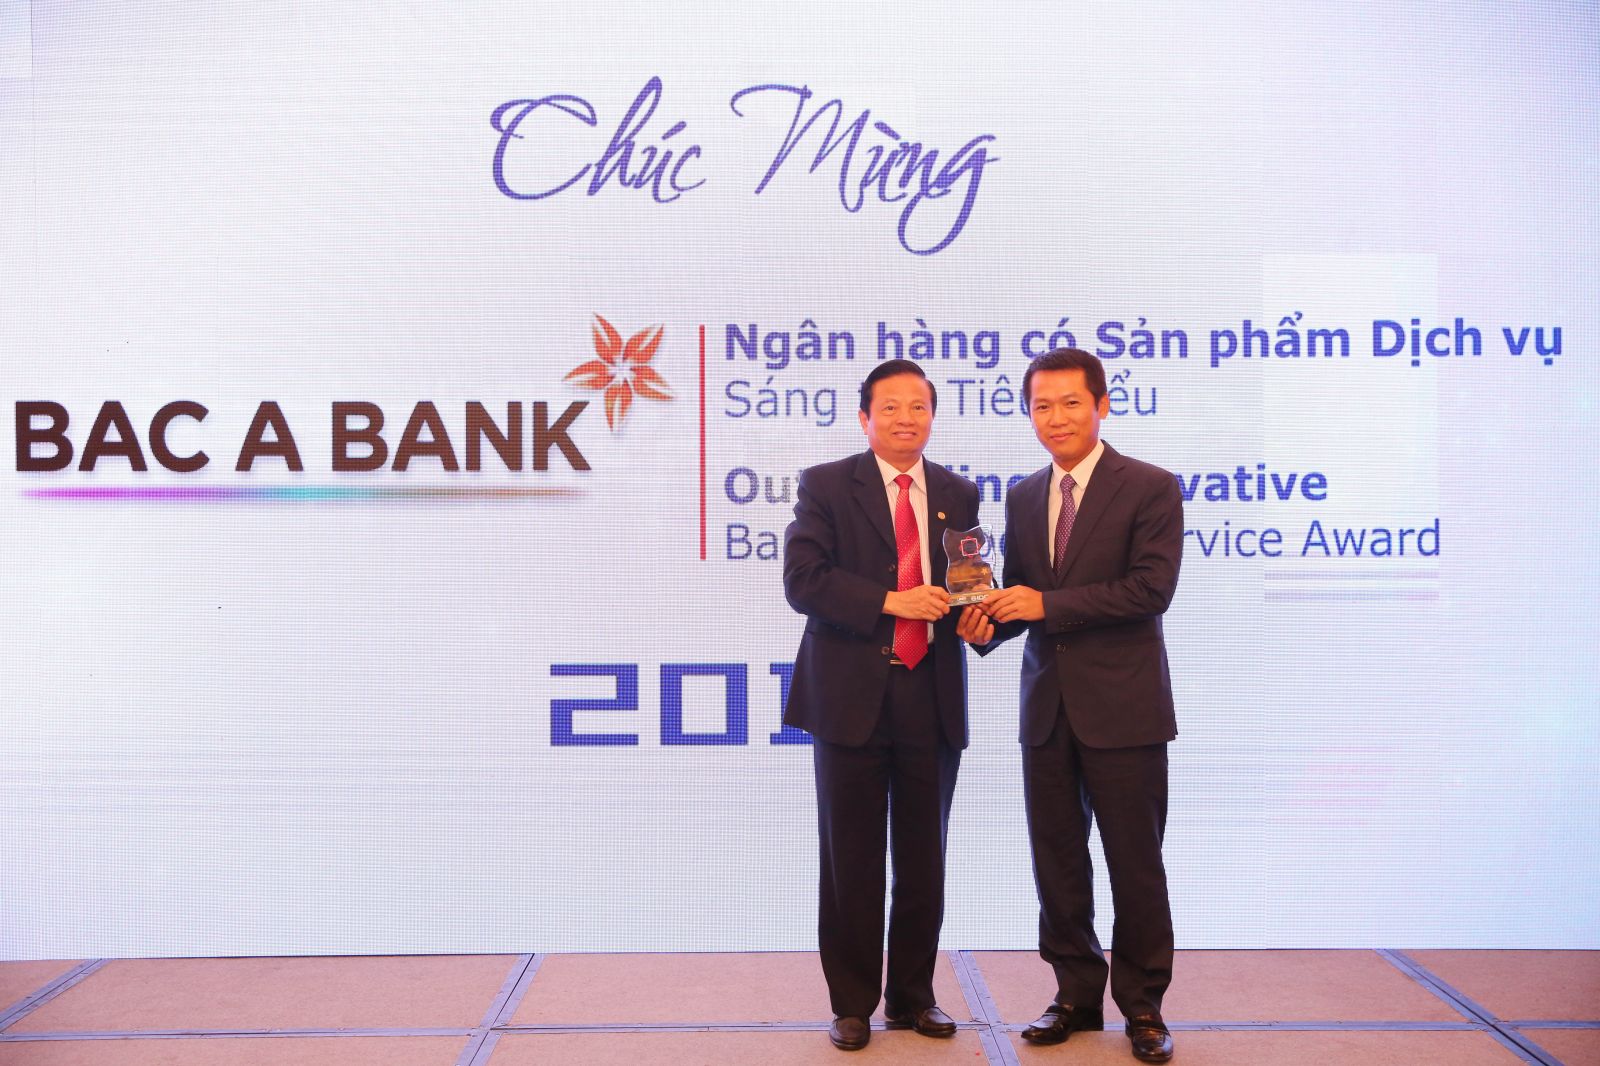 BAC A BANK được vinh danh trong hai hạng mục quan trọng của “Giải thưởng Ngân hàng tiêu biểu Việt Nam 2018 - Vietnam Outstanding Banking Awards 2018”.